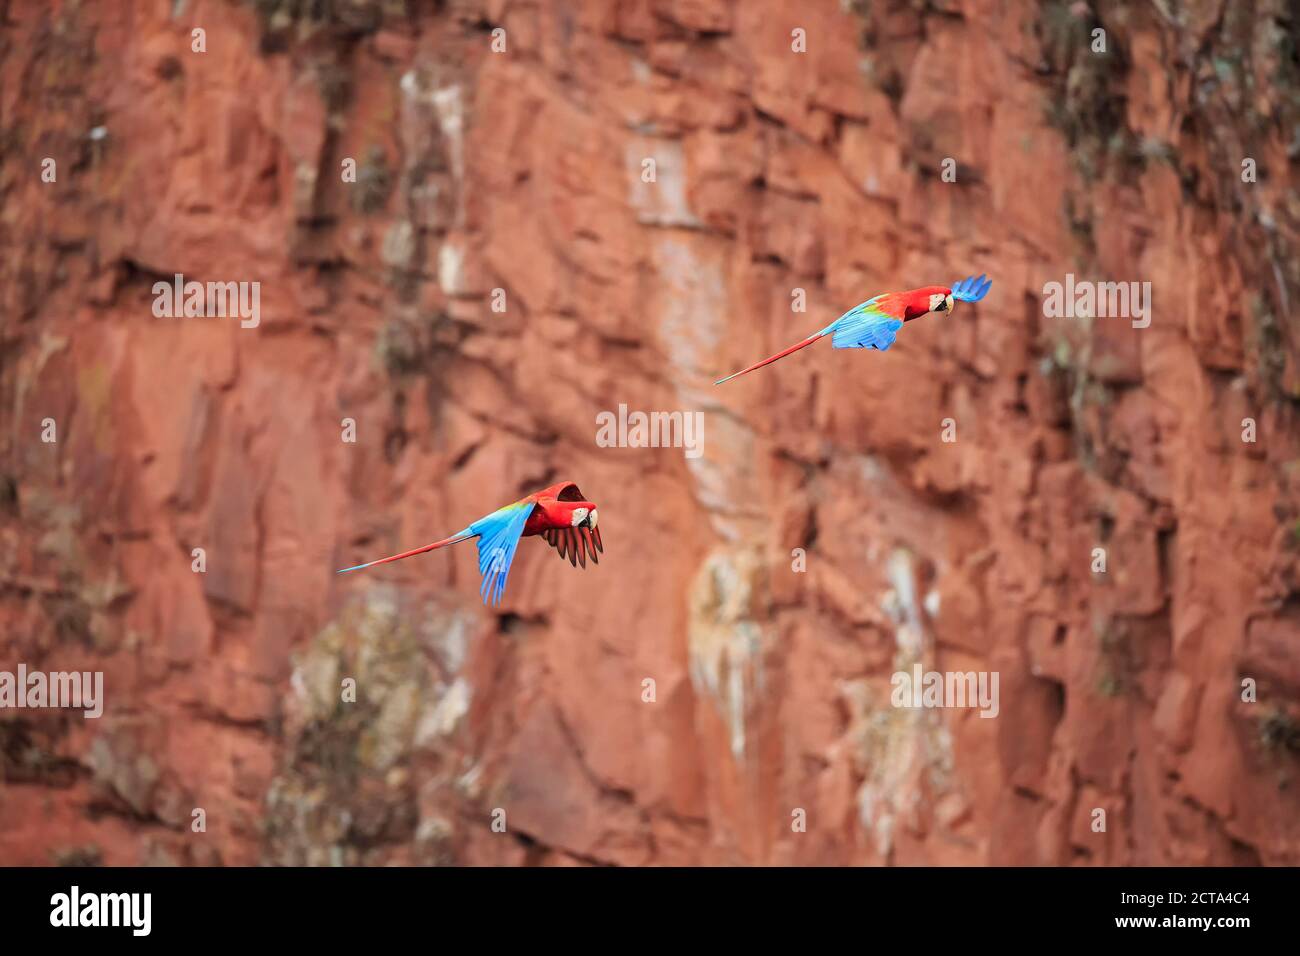 Brazil, Mato Grosso, Mato Grosso do Sul, Bonito, Buraco of Araras, flying scarlet macaws Stock Photo